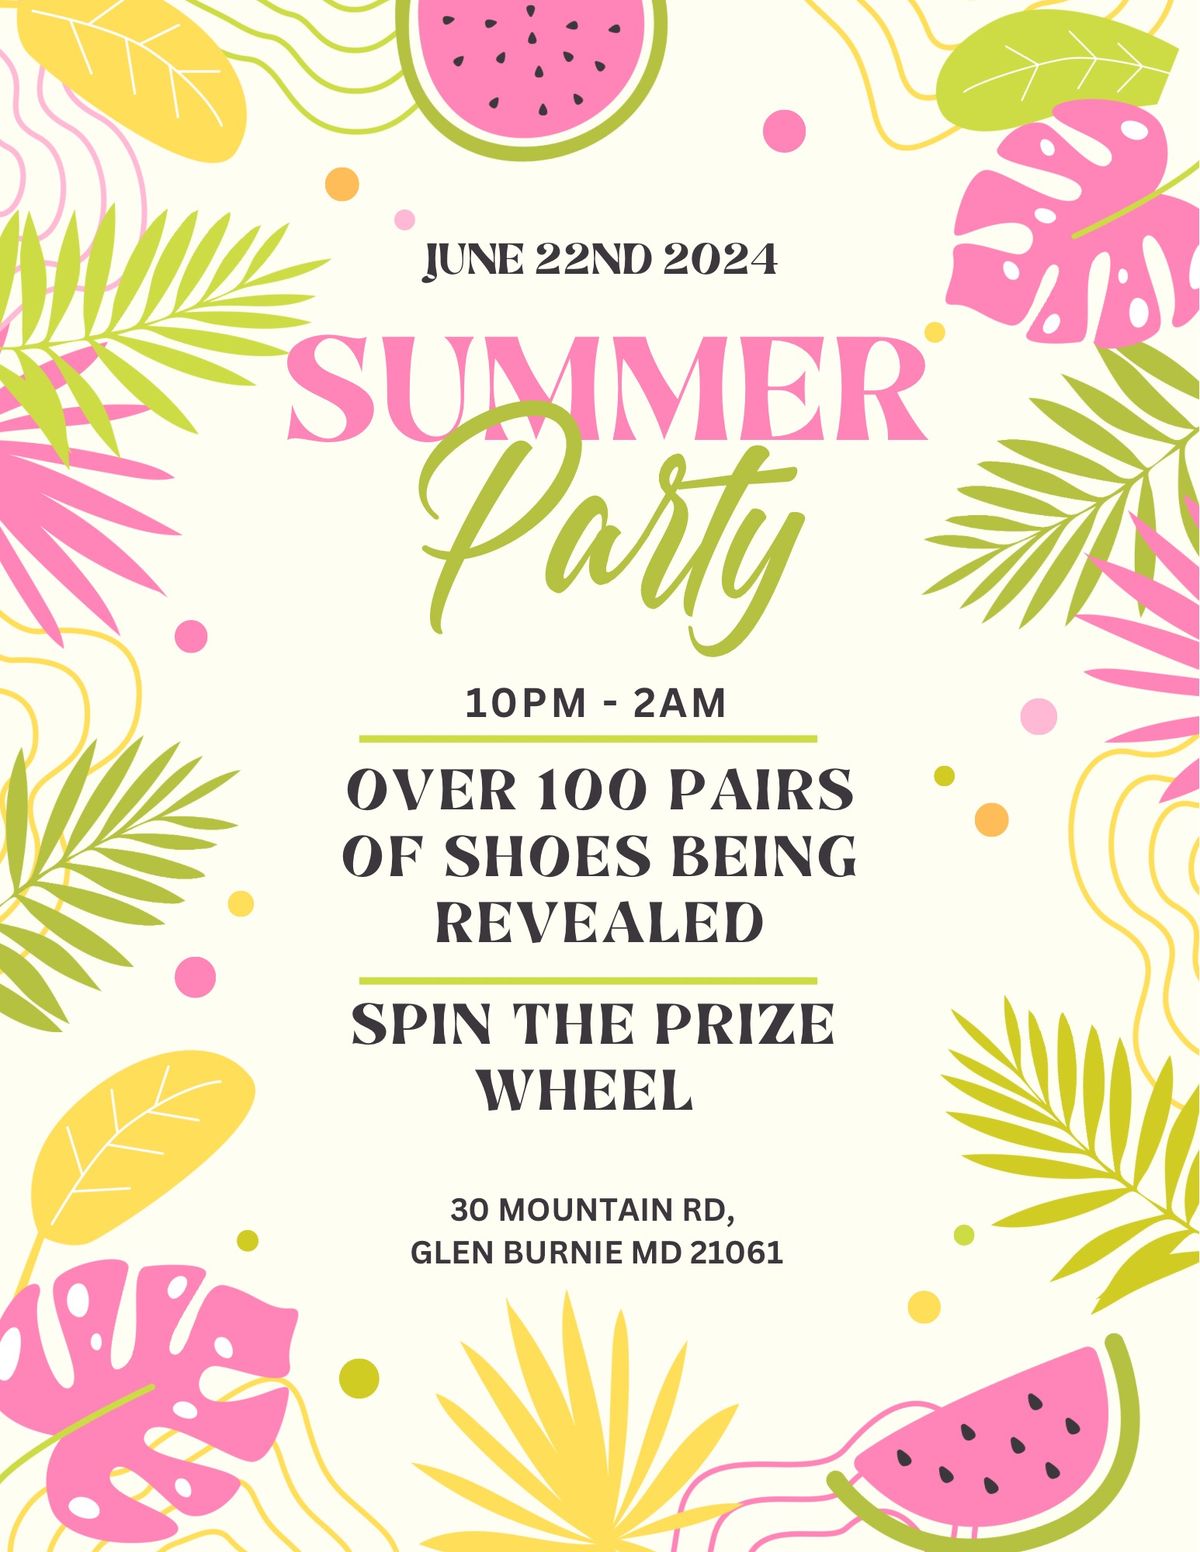 Summer Party @Plato\u2019s Closet - Glen Burnie